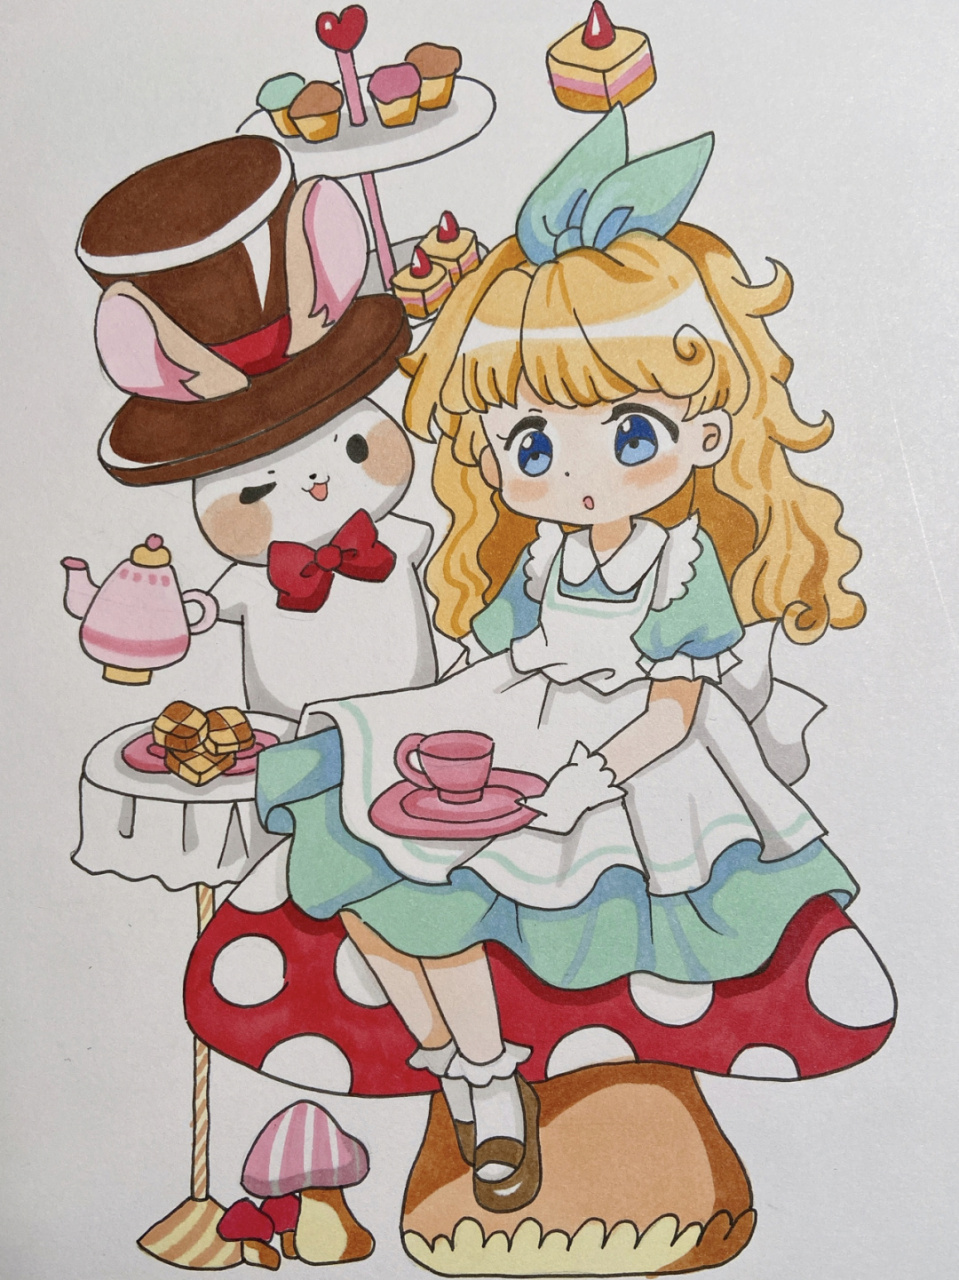 爱丽丝梦游仙境手绘马克笔动漫小兔子女孩 美术宝 爱丽丝梦游仙境 课